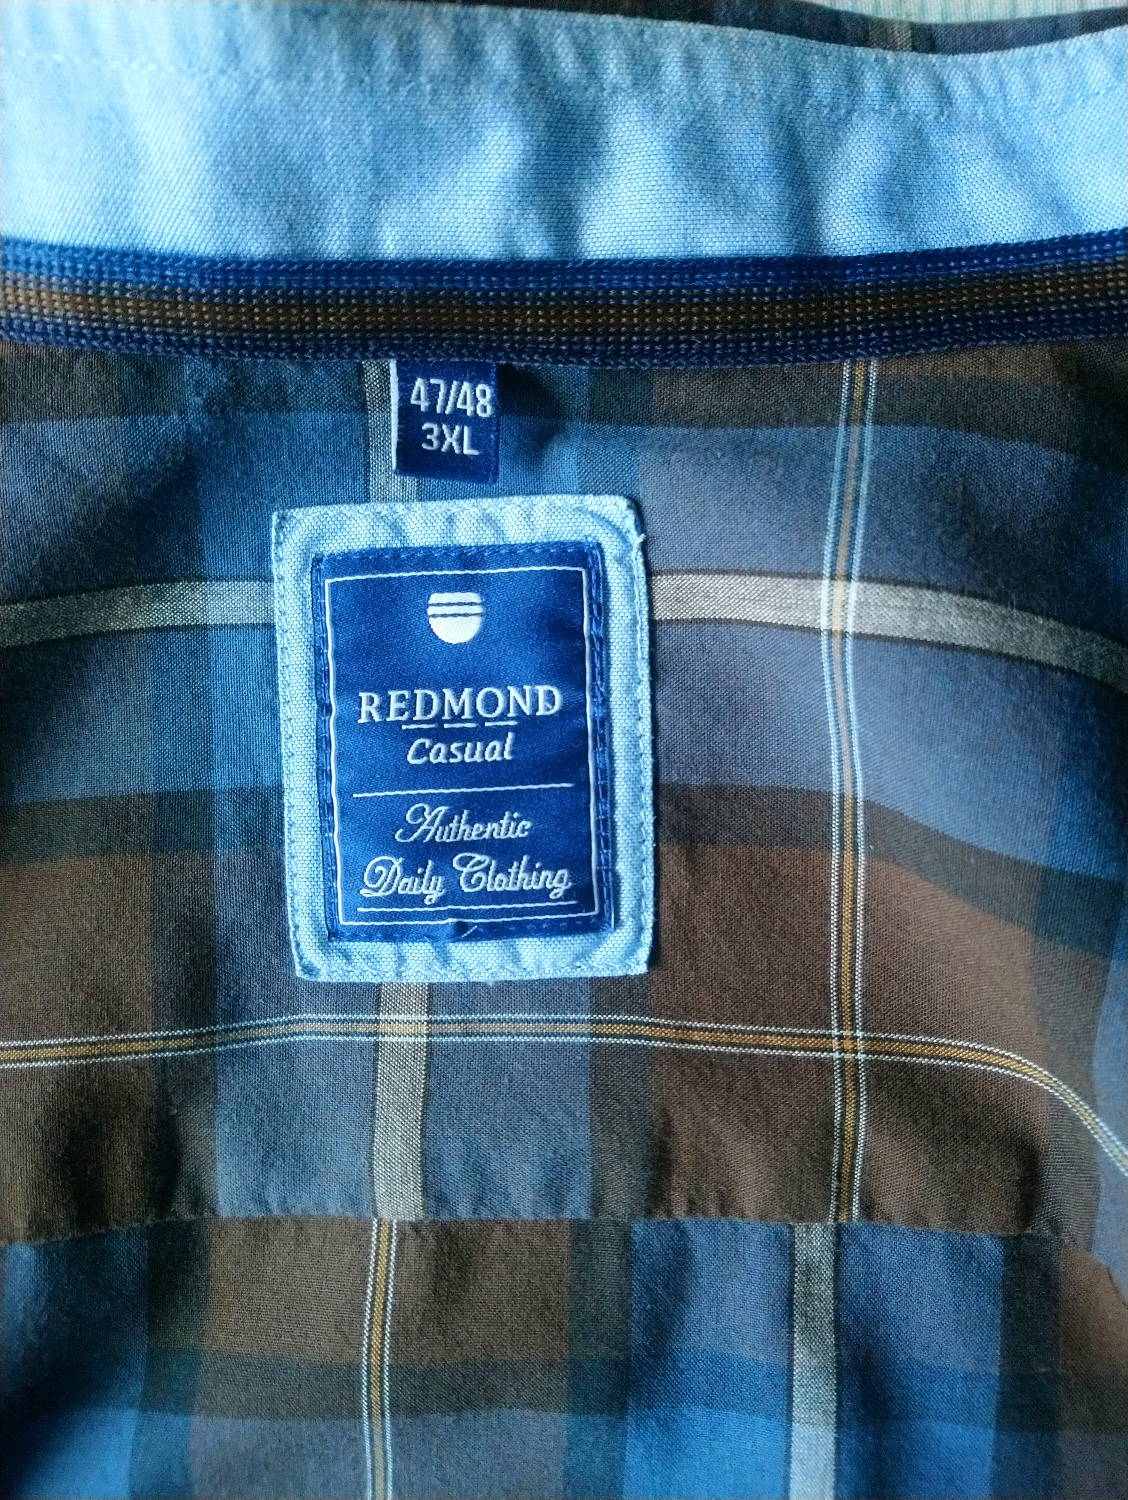 Redmond-Hemd. Blau braun geprüft. Größe 3XL / XXXL.